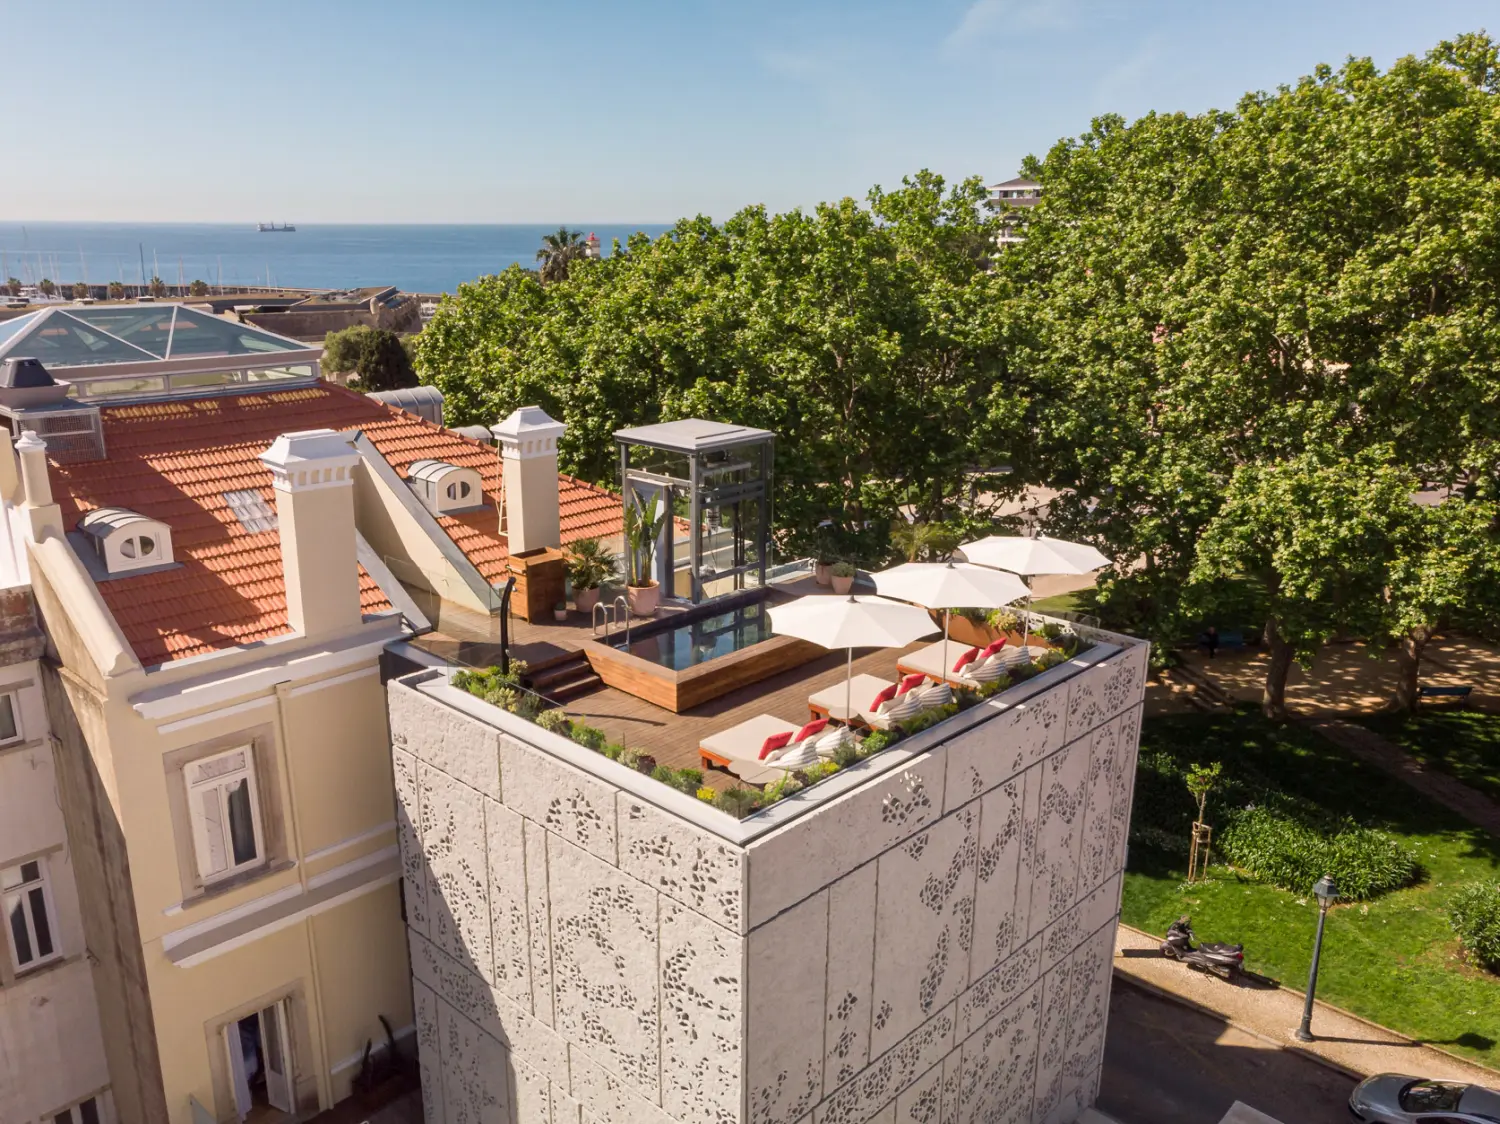 Dieses neue Hotel in Portugal ist ein Hotspot für Kunstfans